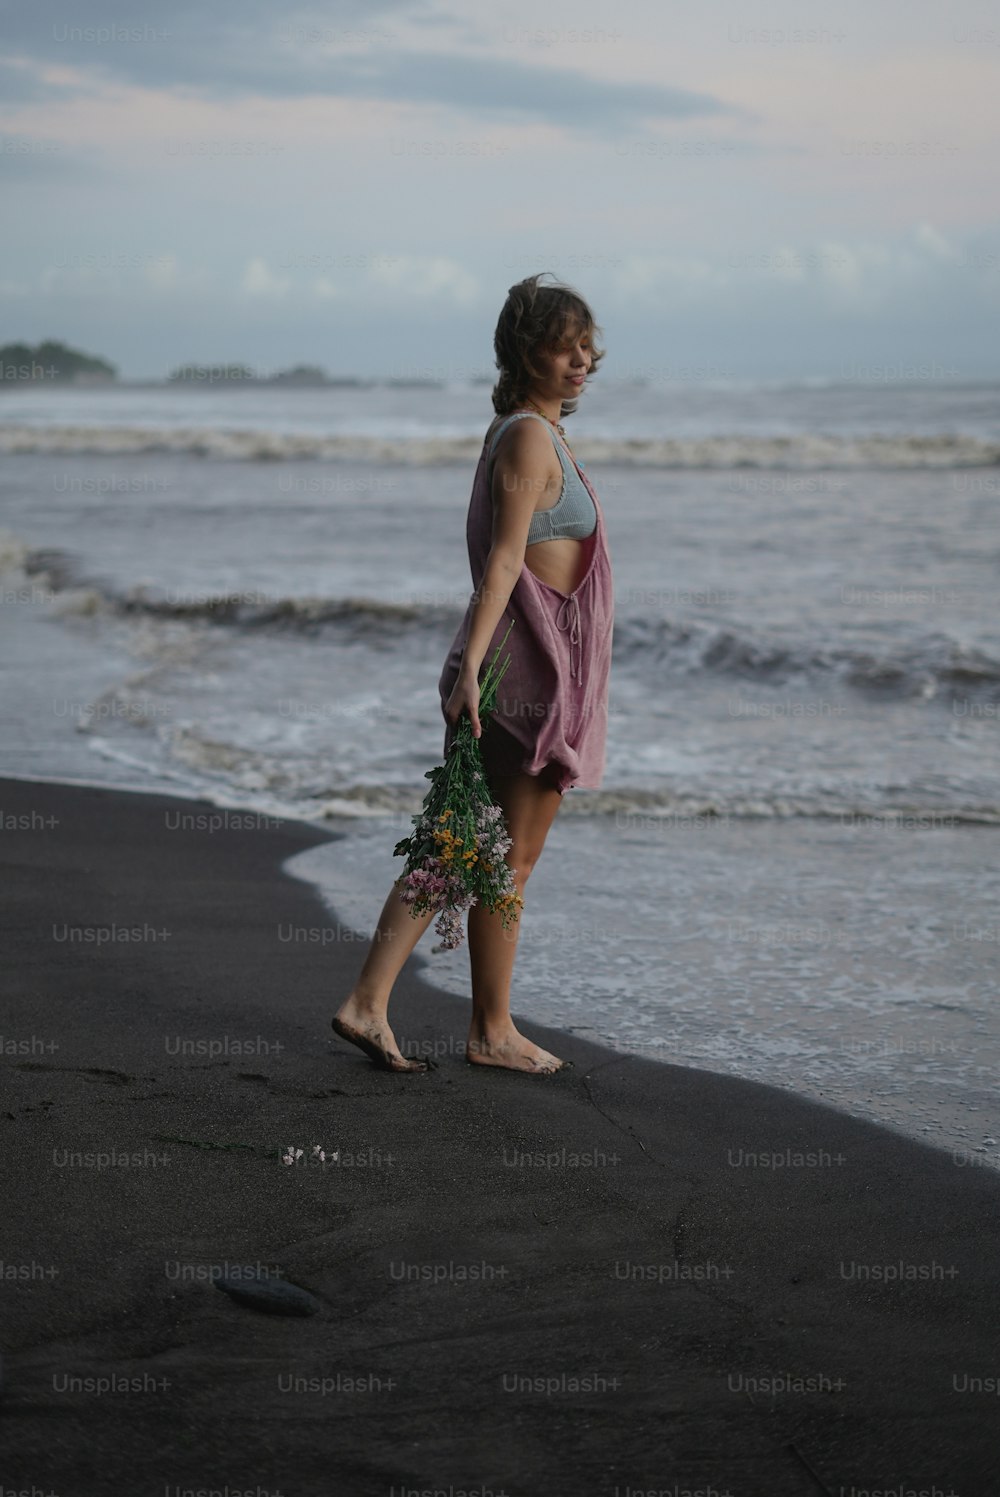 바다 옆 해변에 서 있는 여자